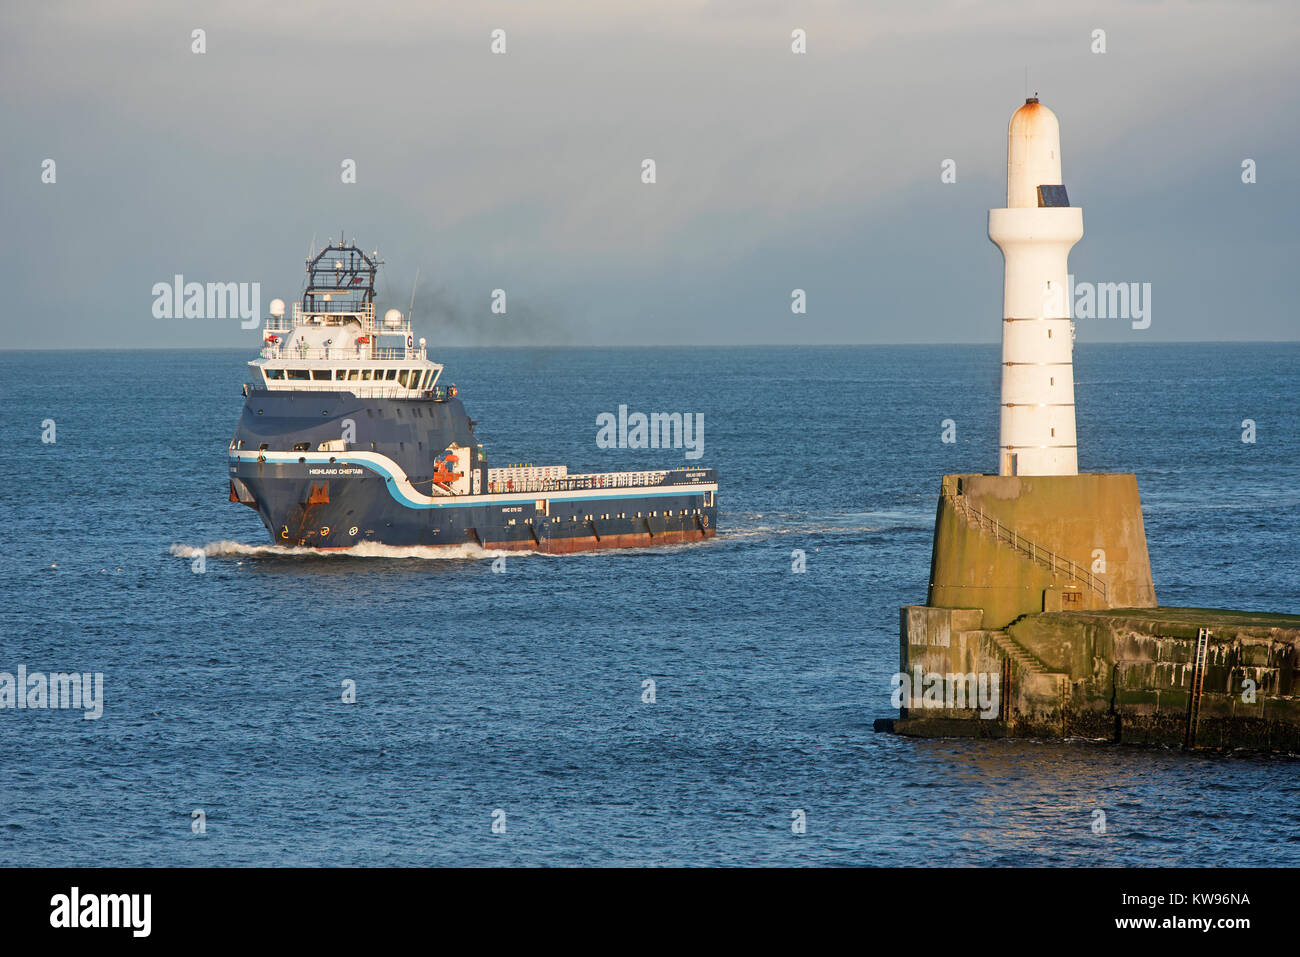 Nordsee Offshore Supply Vessel Highland Chieften nähert sich der Eingang zum Hafen Aberdeen. Stockfoto